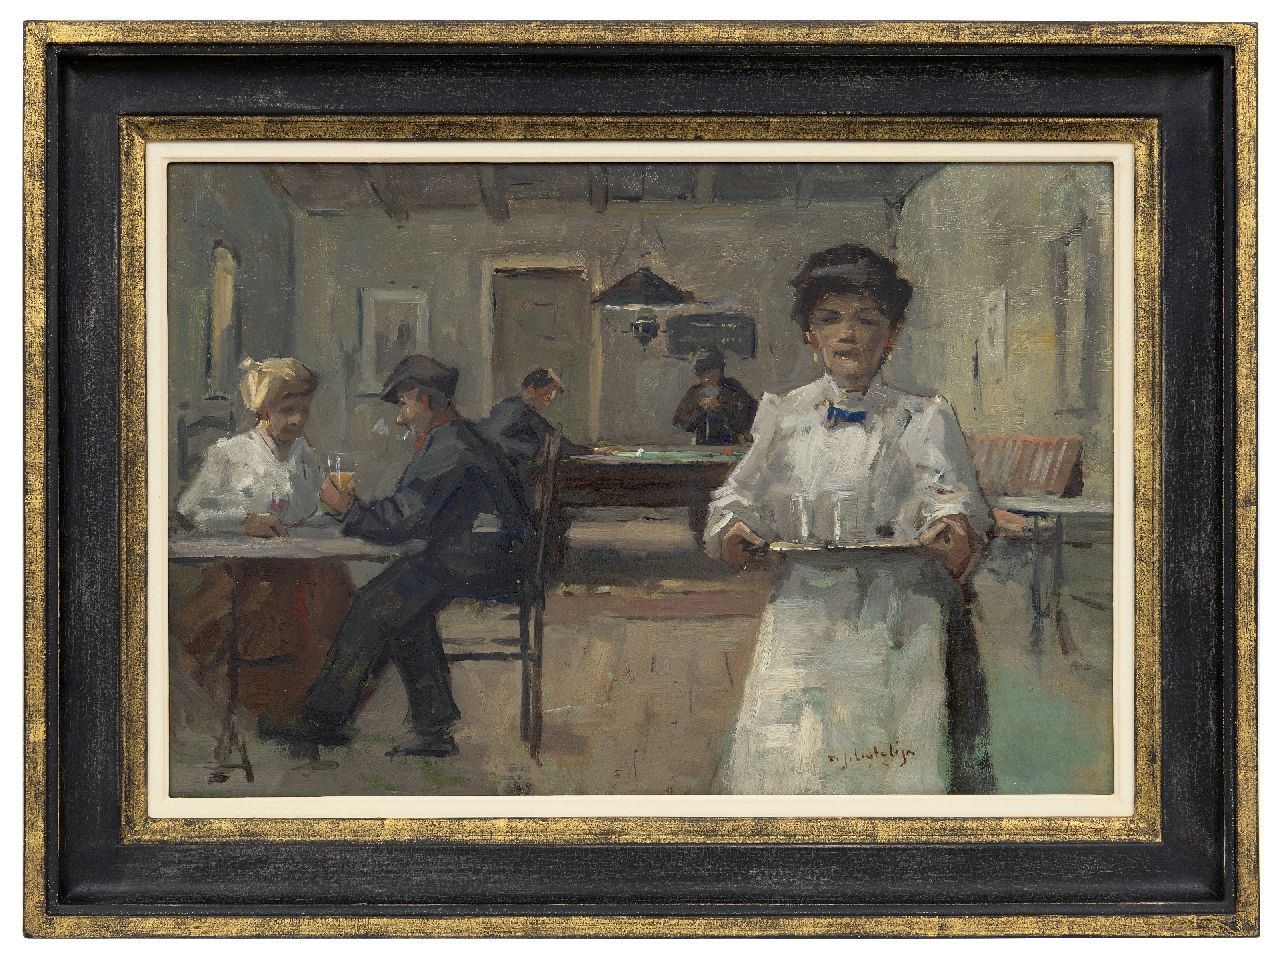 Ligtelijn E.J.  | Evert Jan Ligtelijn | Schilderijen te koop aangeboden | Dorpscafé, olieverf op paneel 36,6 x 54,5 cm, gesigneerd rechtsonder